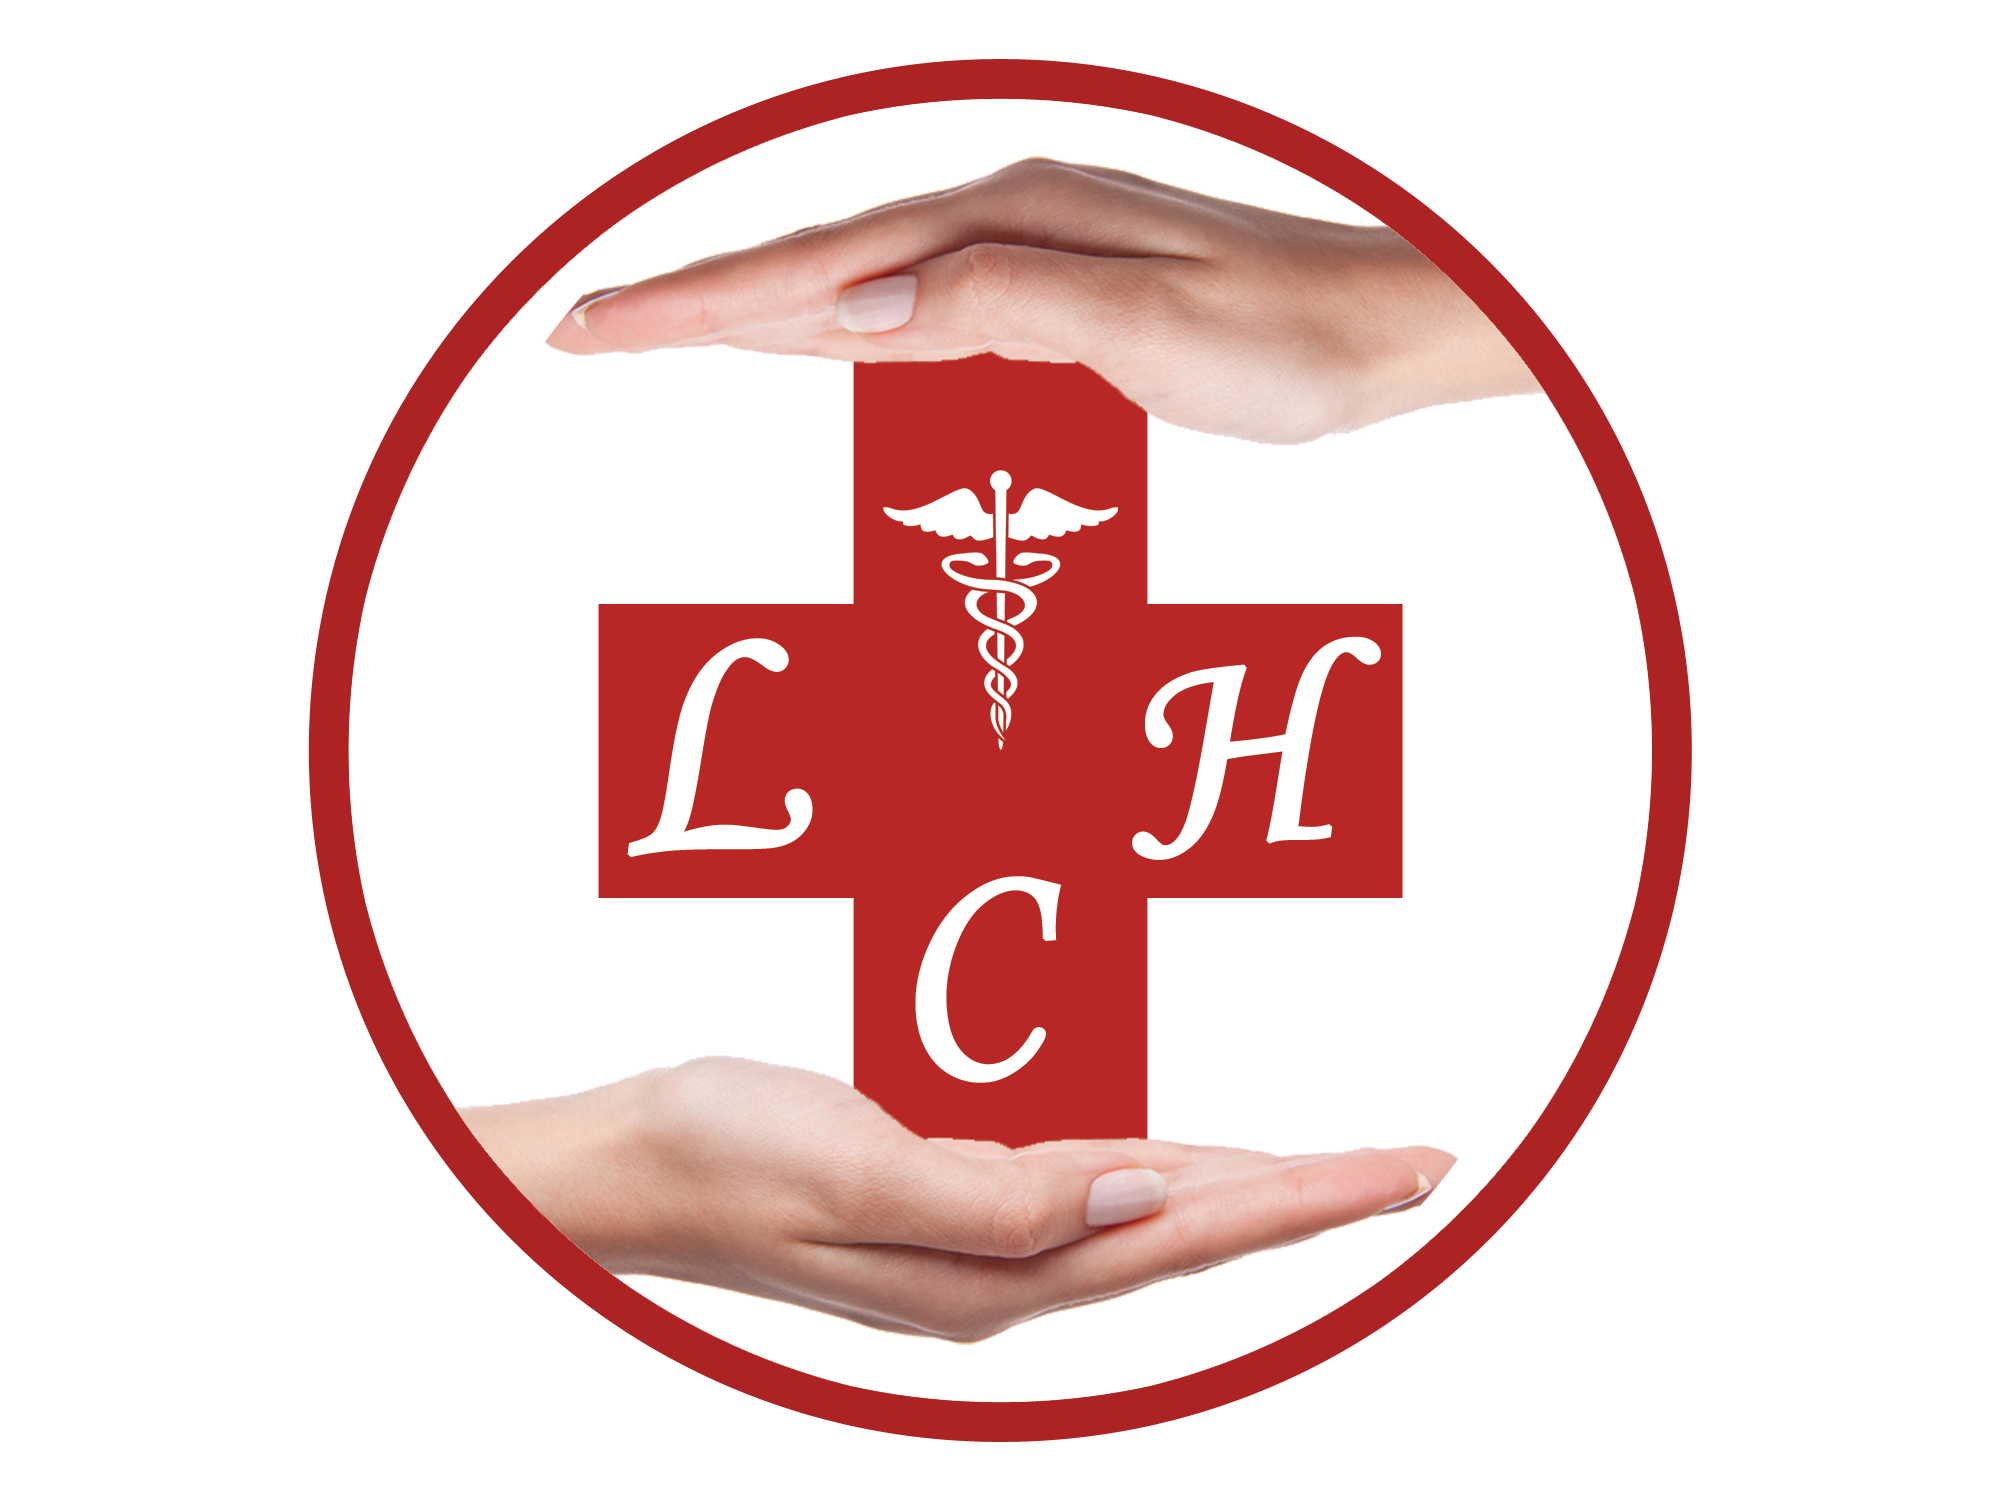 Life Care Hospital - Logo